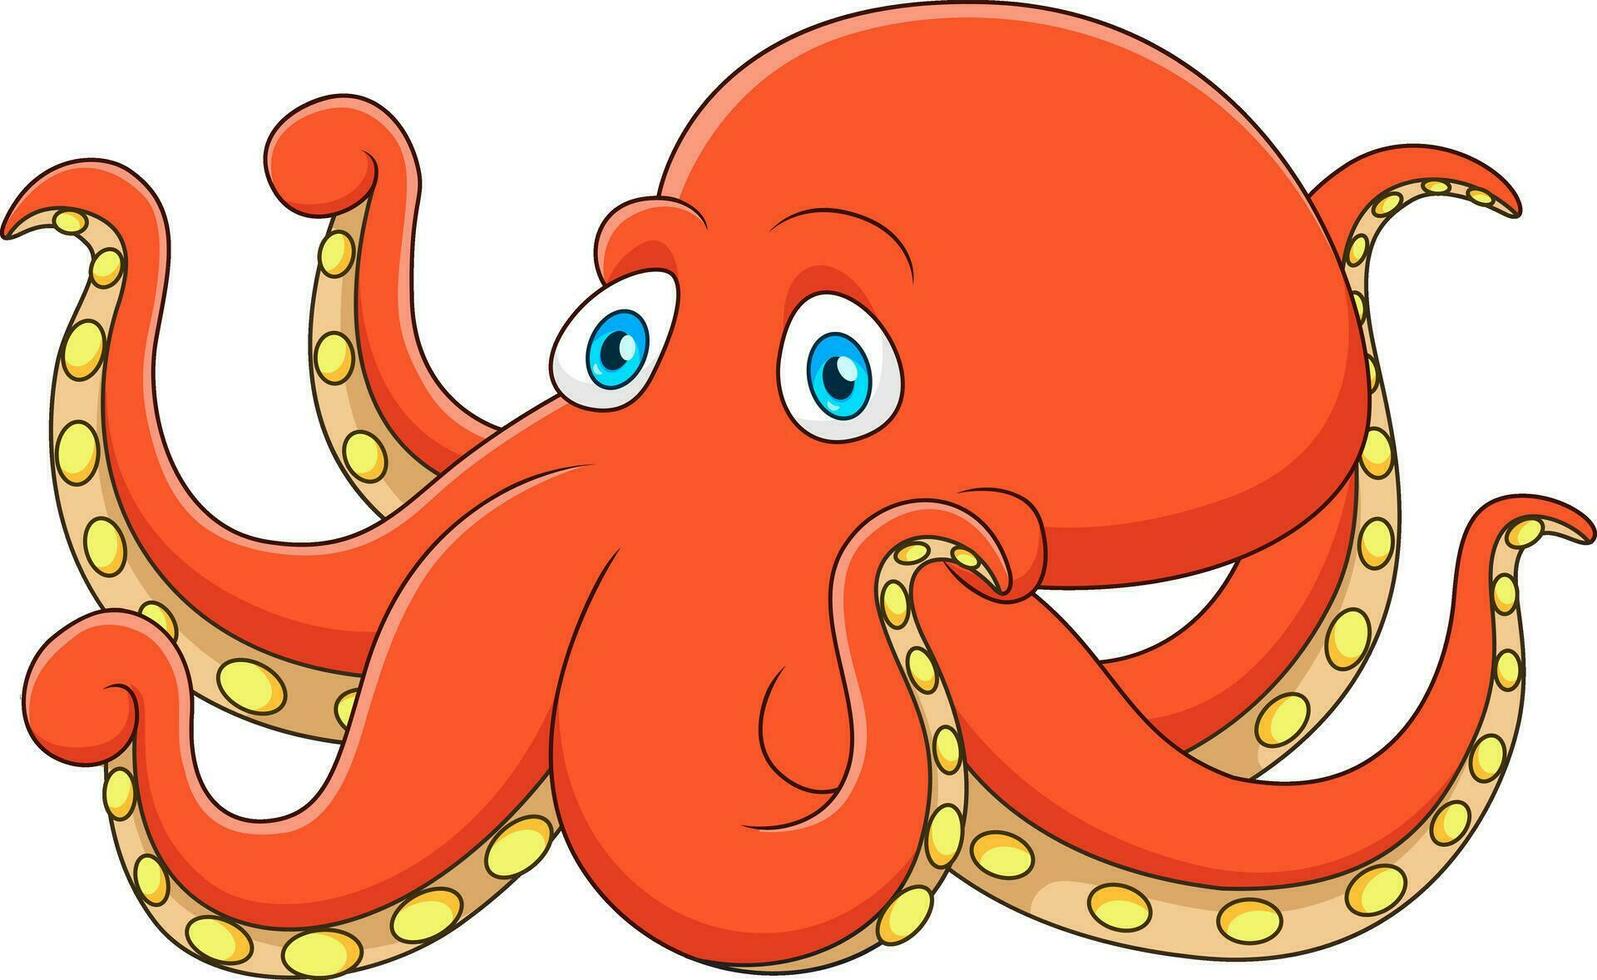 Cute octopus mascot character cartoon vector